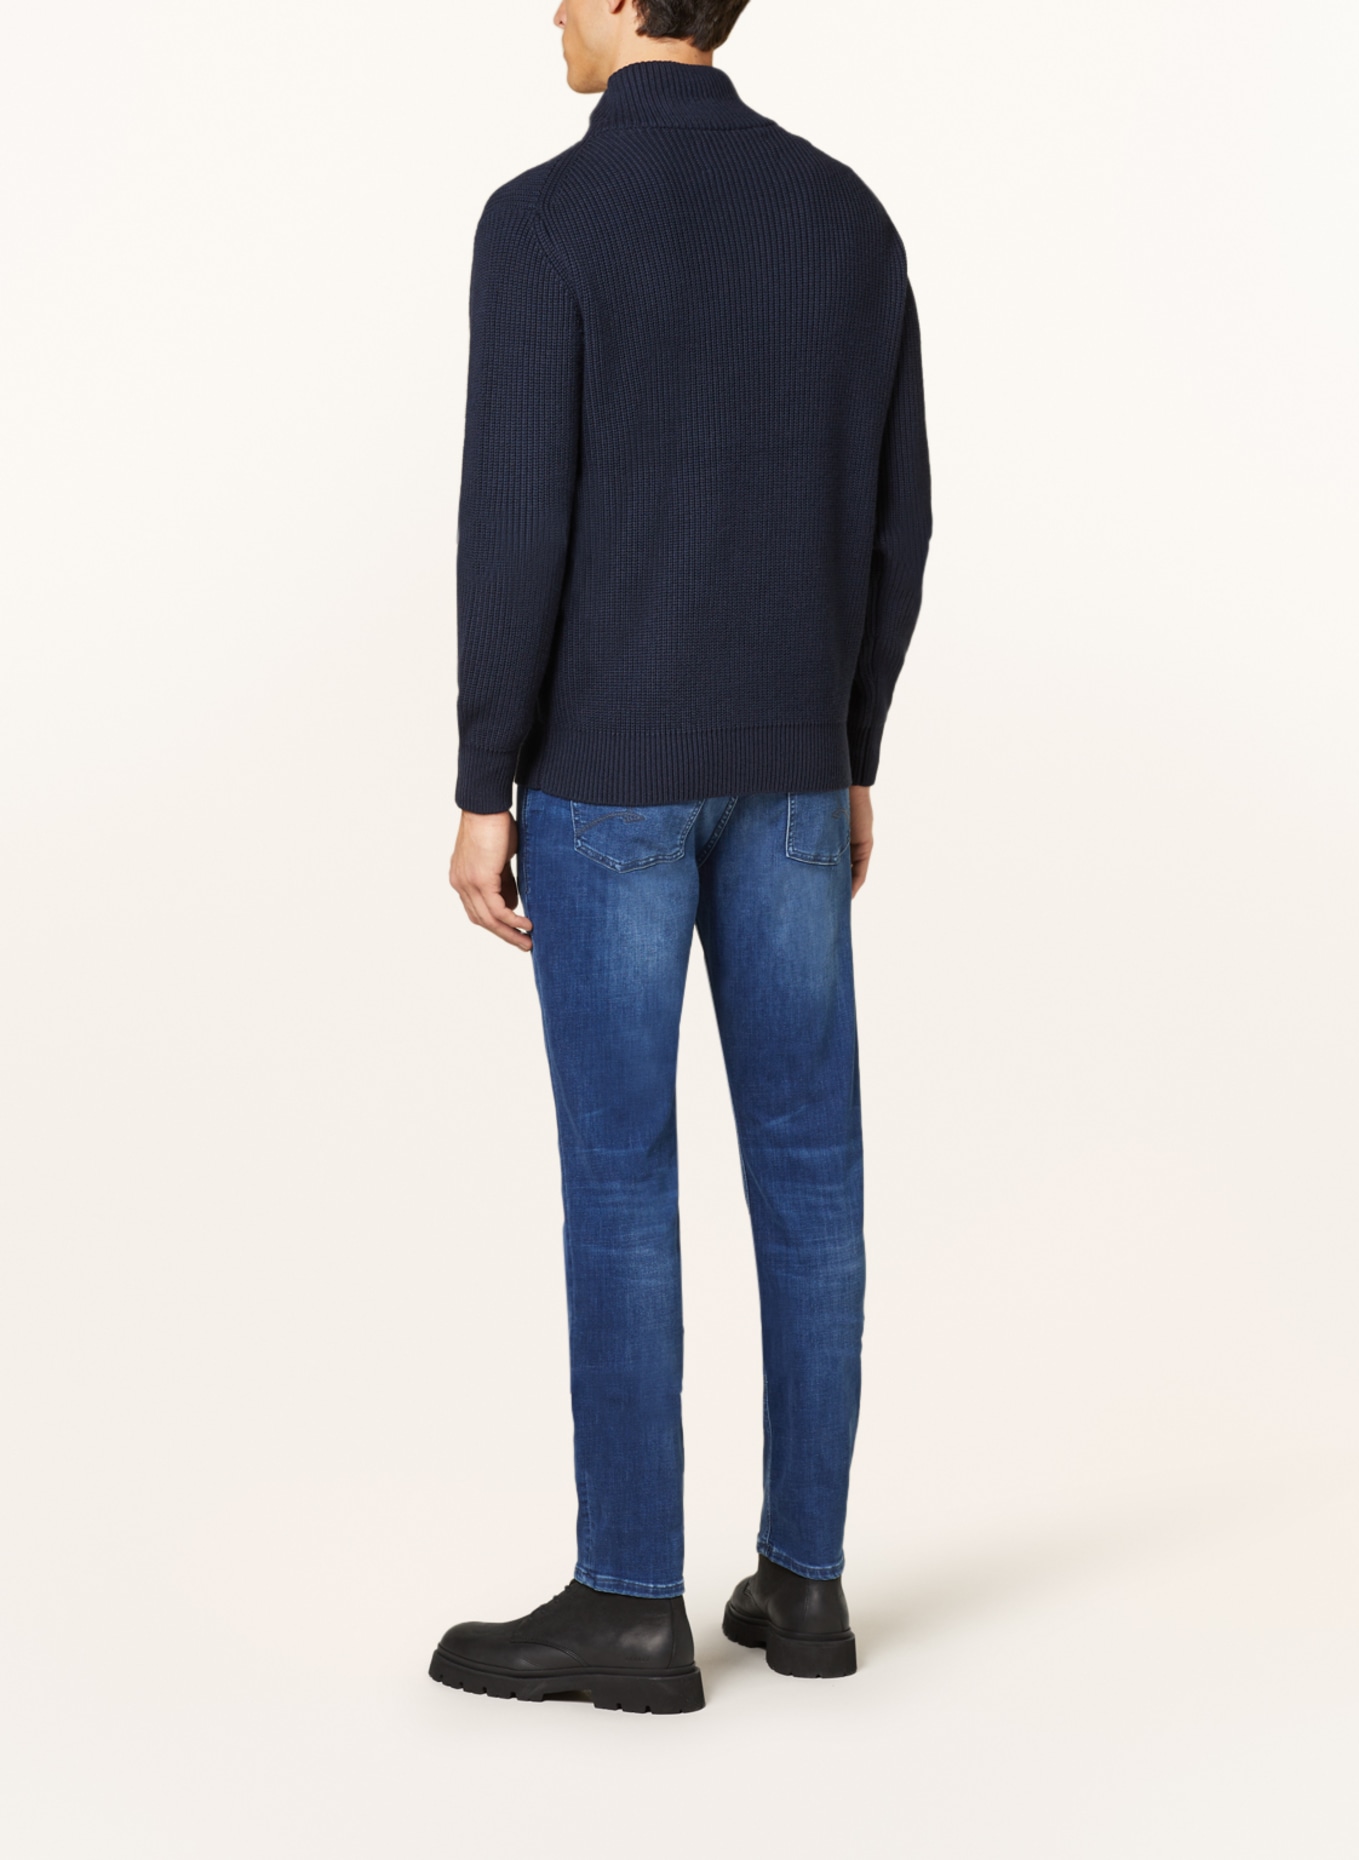 BALDESSARINI Jeans Regular Fit, Farbe: 6825 blue used whisker (Bild 3)